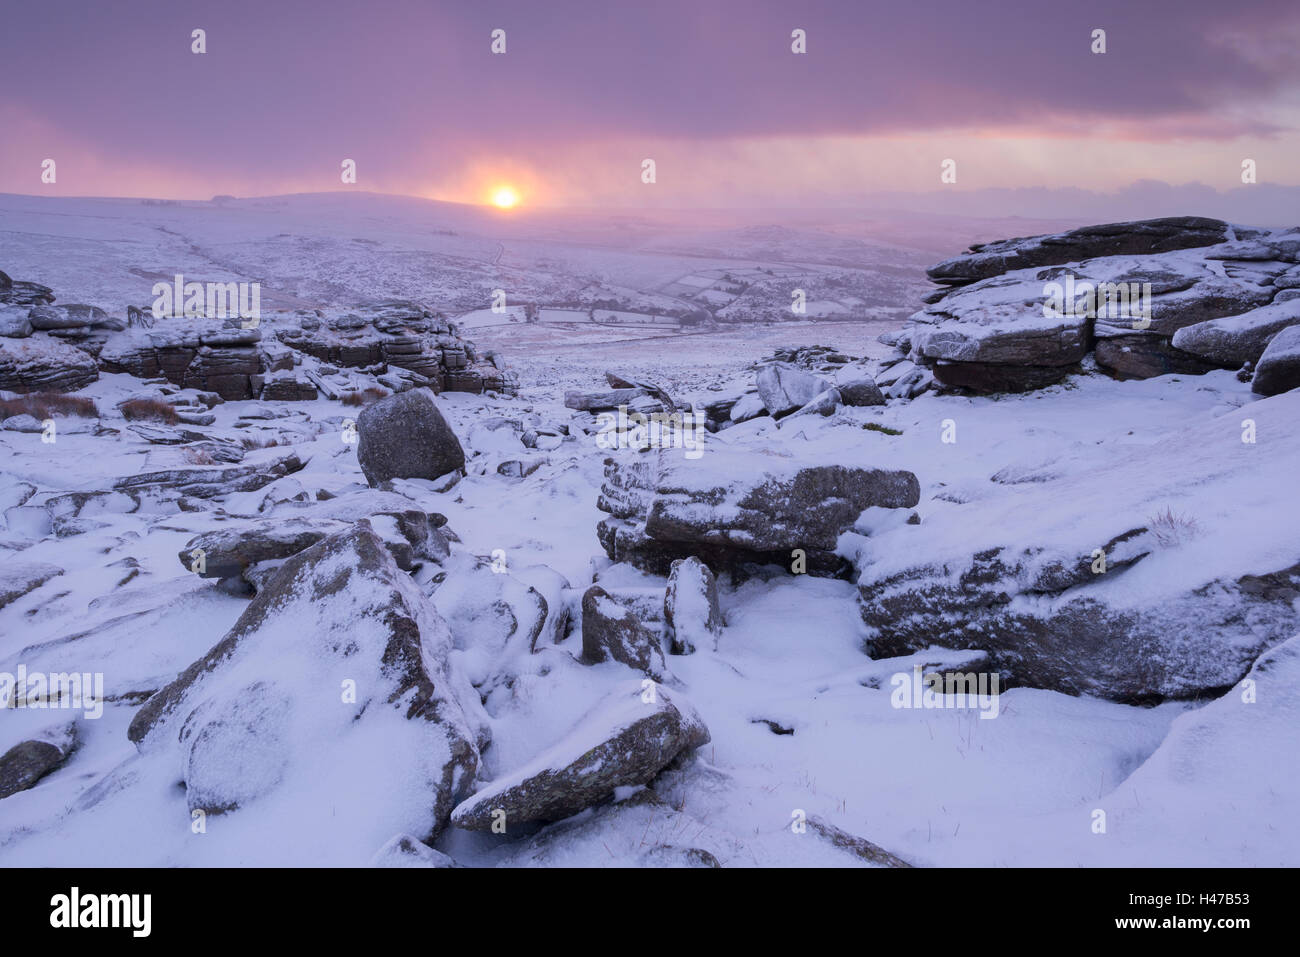 Lever du soleil d'hiver sur une lande couverte de neige, Grand Tor discontinues, Dartmoor, dans le Devon, Angleterre. L'hiver (Janvier) 2015. Banque D'Images